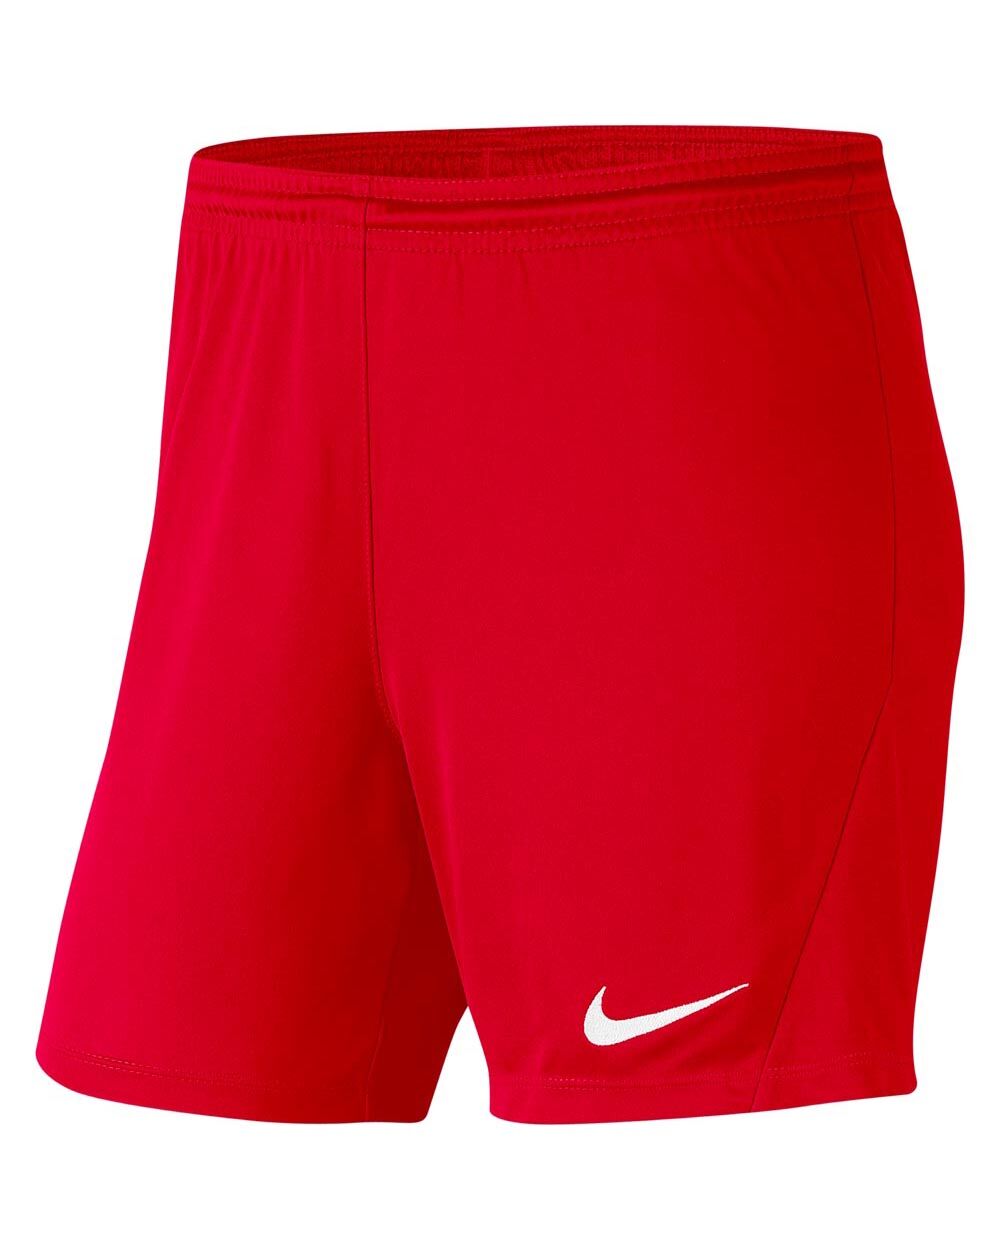 Pantalón corto Nike Park III Rojo para Mujeres - BV6860-657